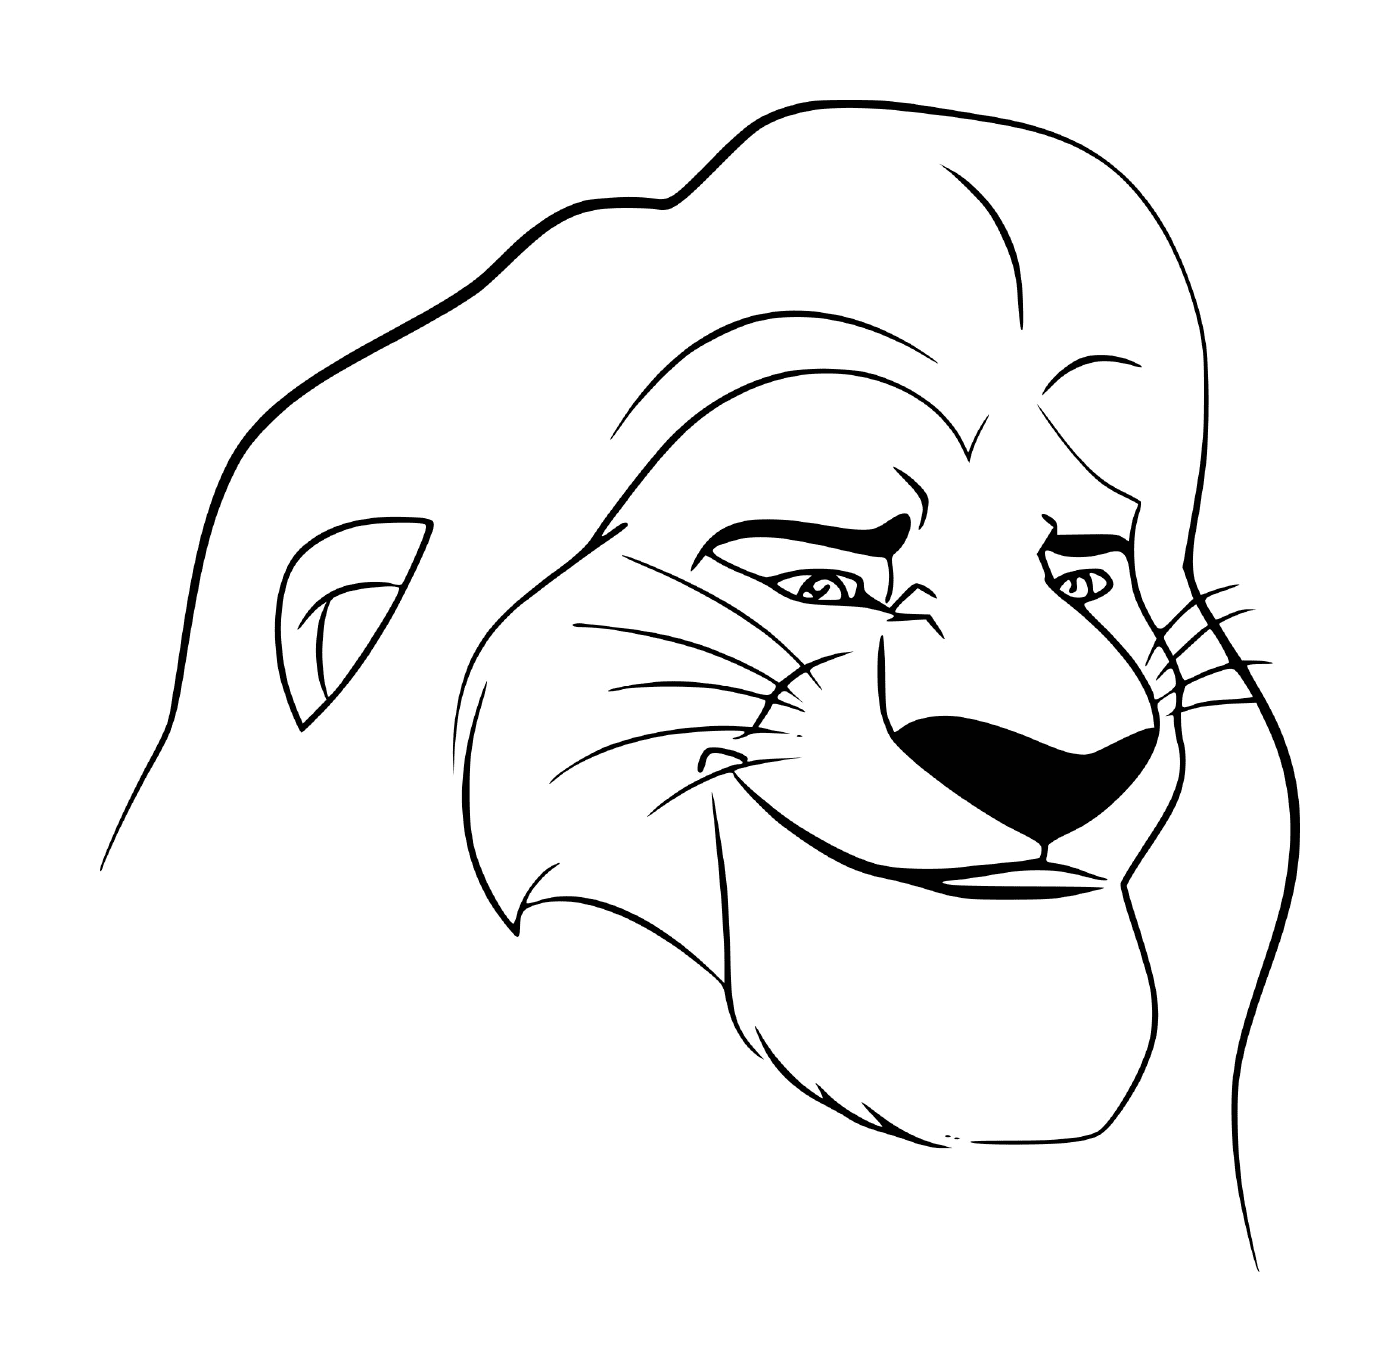  Gesicht von Mufasa, Charakter des Löwenkönigs 